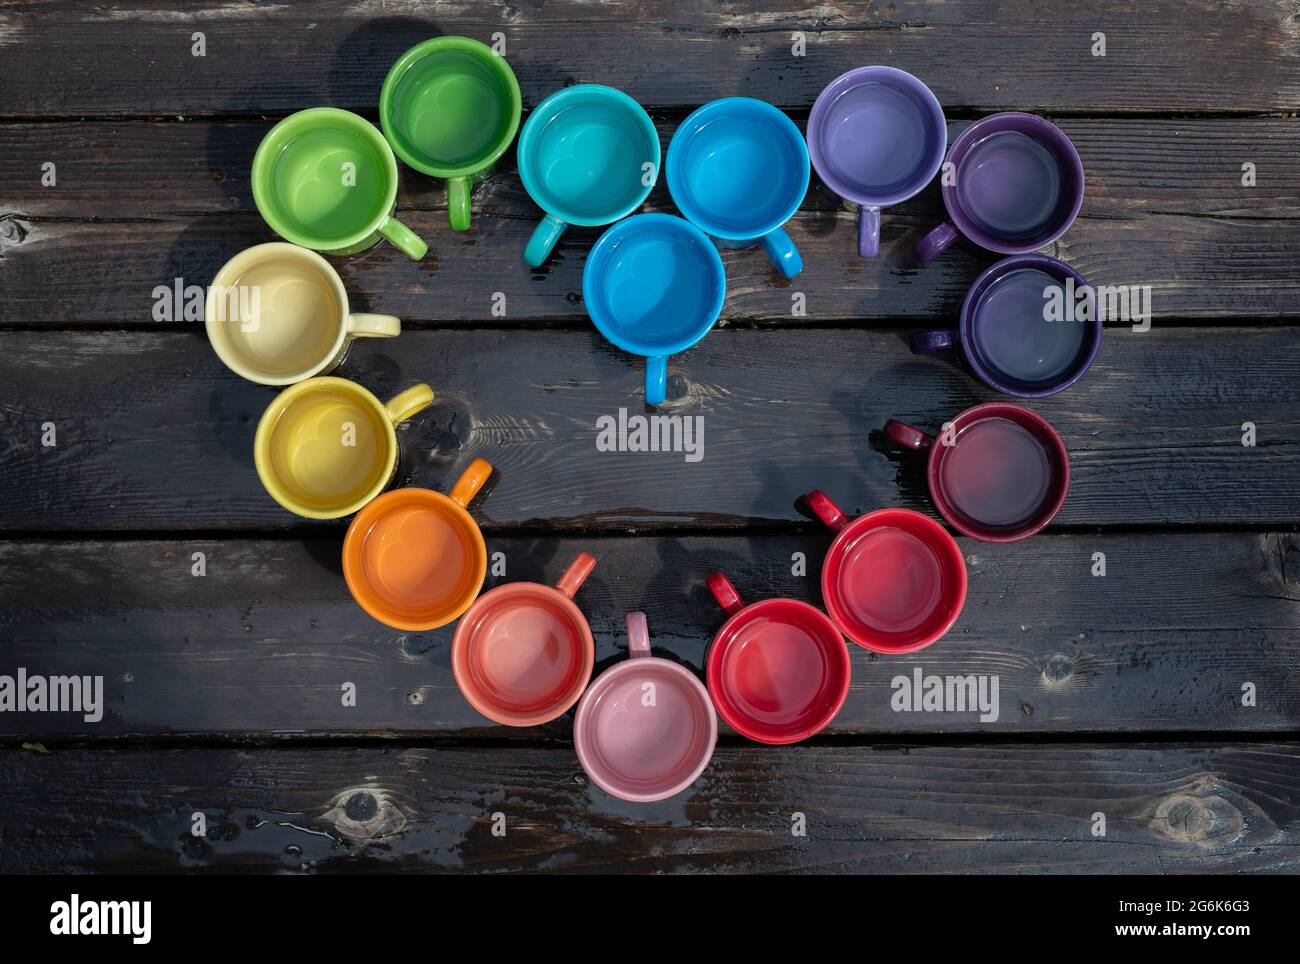 Coloridas tazas de café organizadas en forma de corazón para celebrar el mes del Orgullo Foto de stock